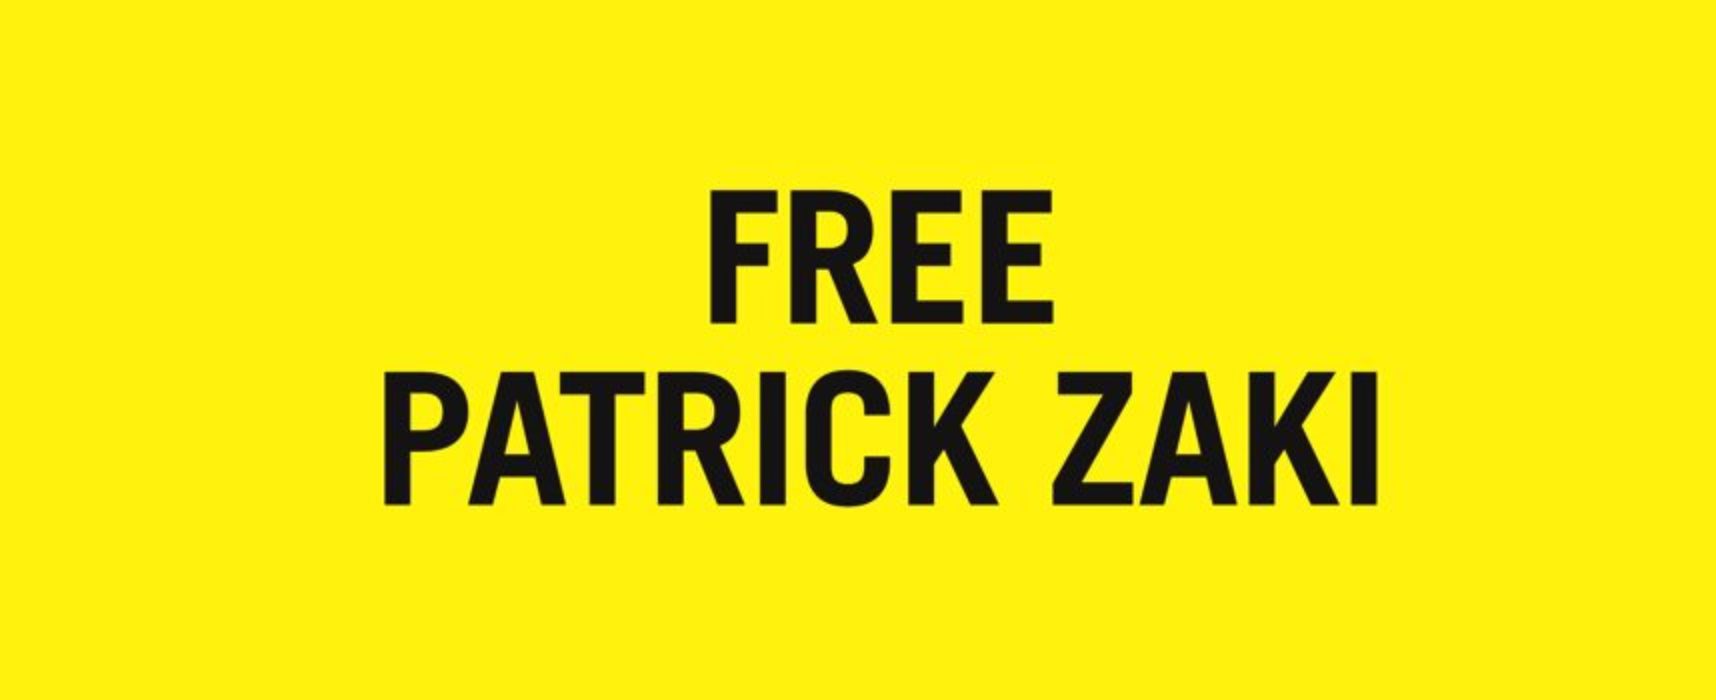 Un anno fa l’arresto di Patrick Zaki: le iniziative del gruppo Amnesty di Bisceglie